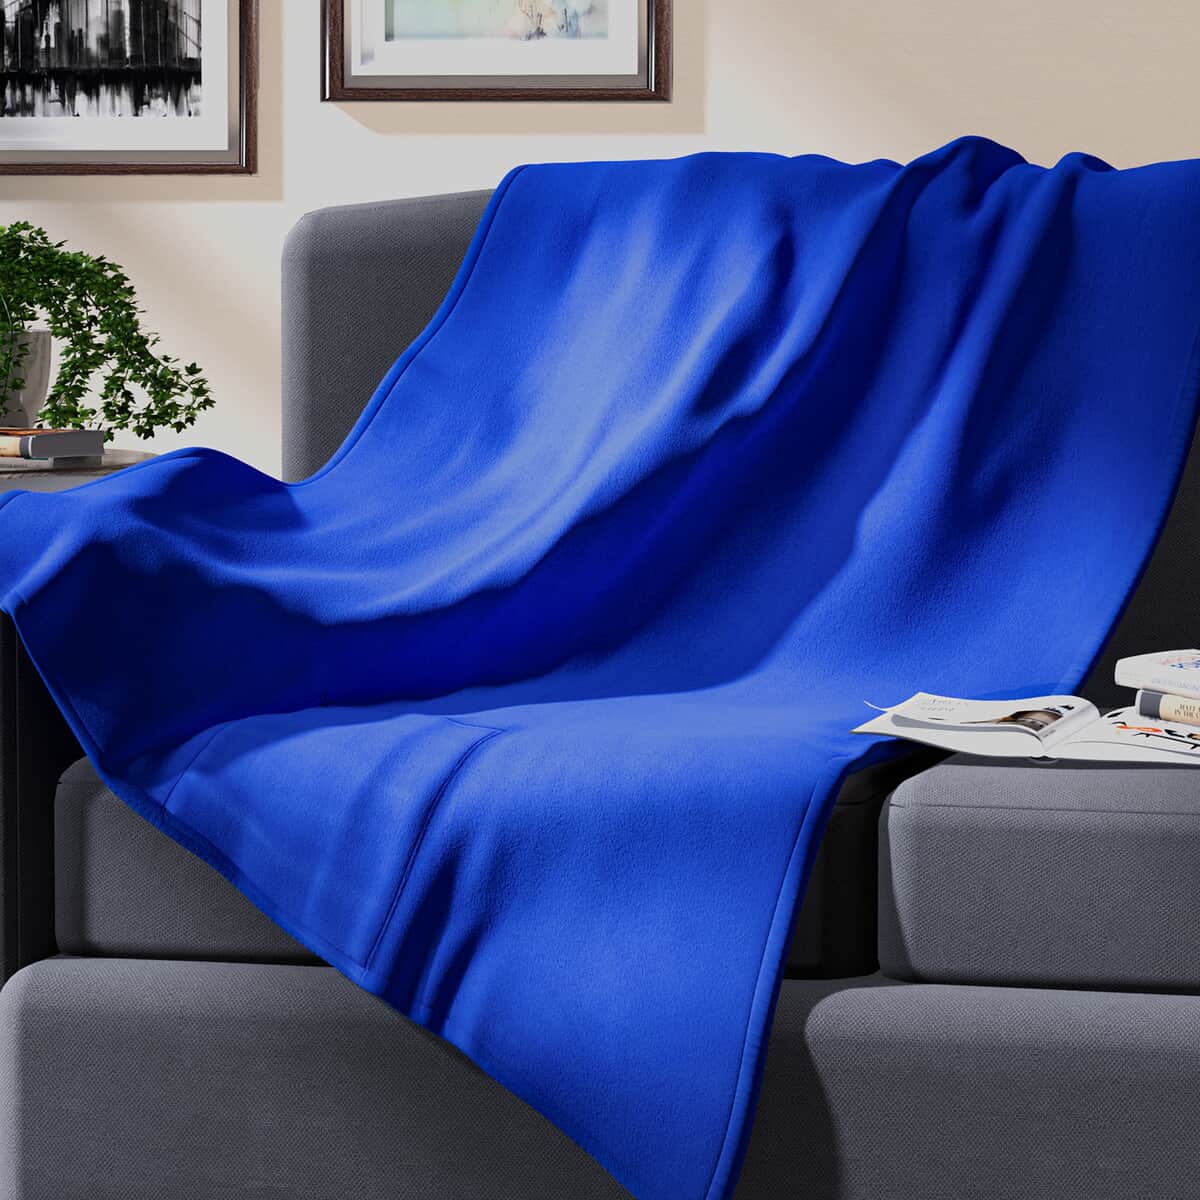 Homesmart 2 in 1 Blue Solid Fleece Travel Blanket with Folded Storage Pocket (Microfiber) image number 0